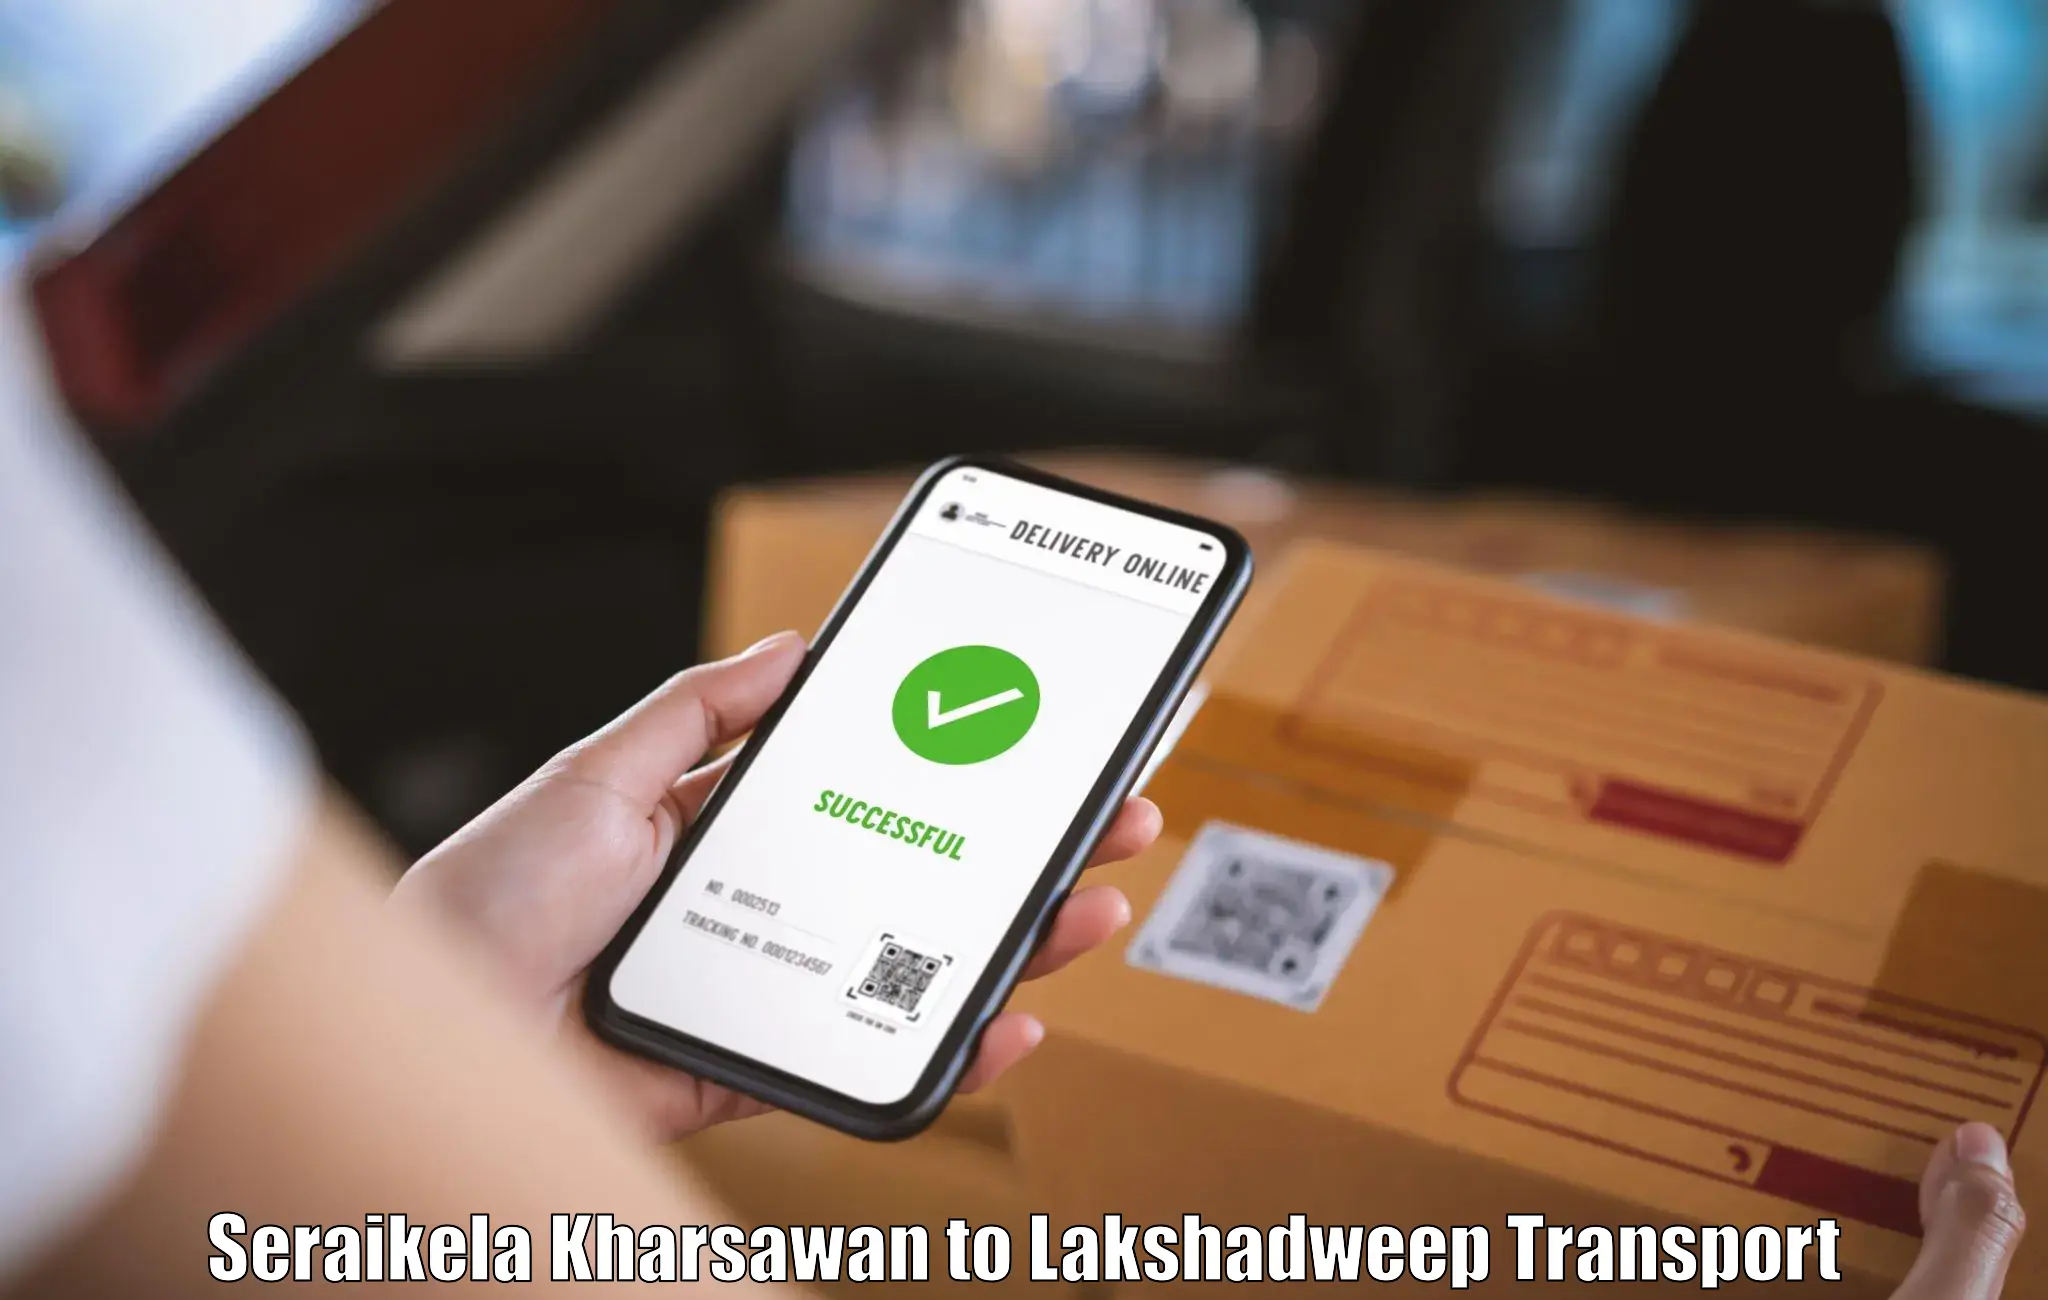 Air freight transport services Seraikela Kharsawan to Lakshadweep